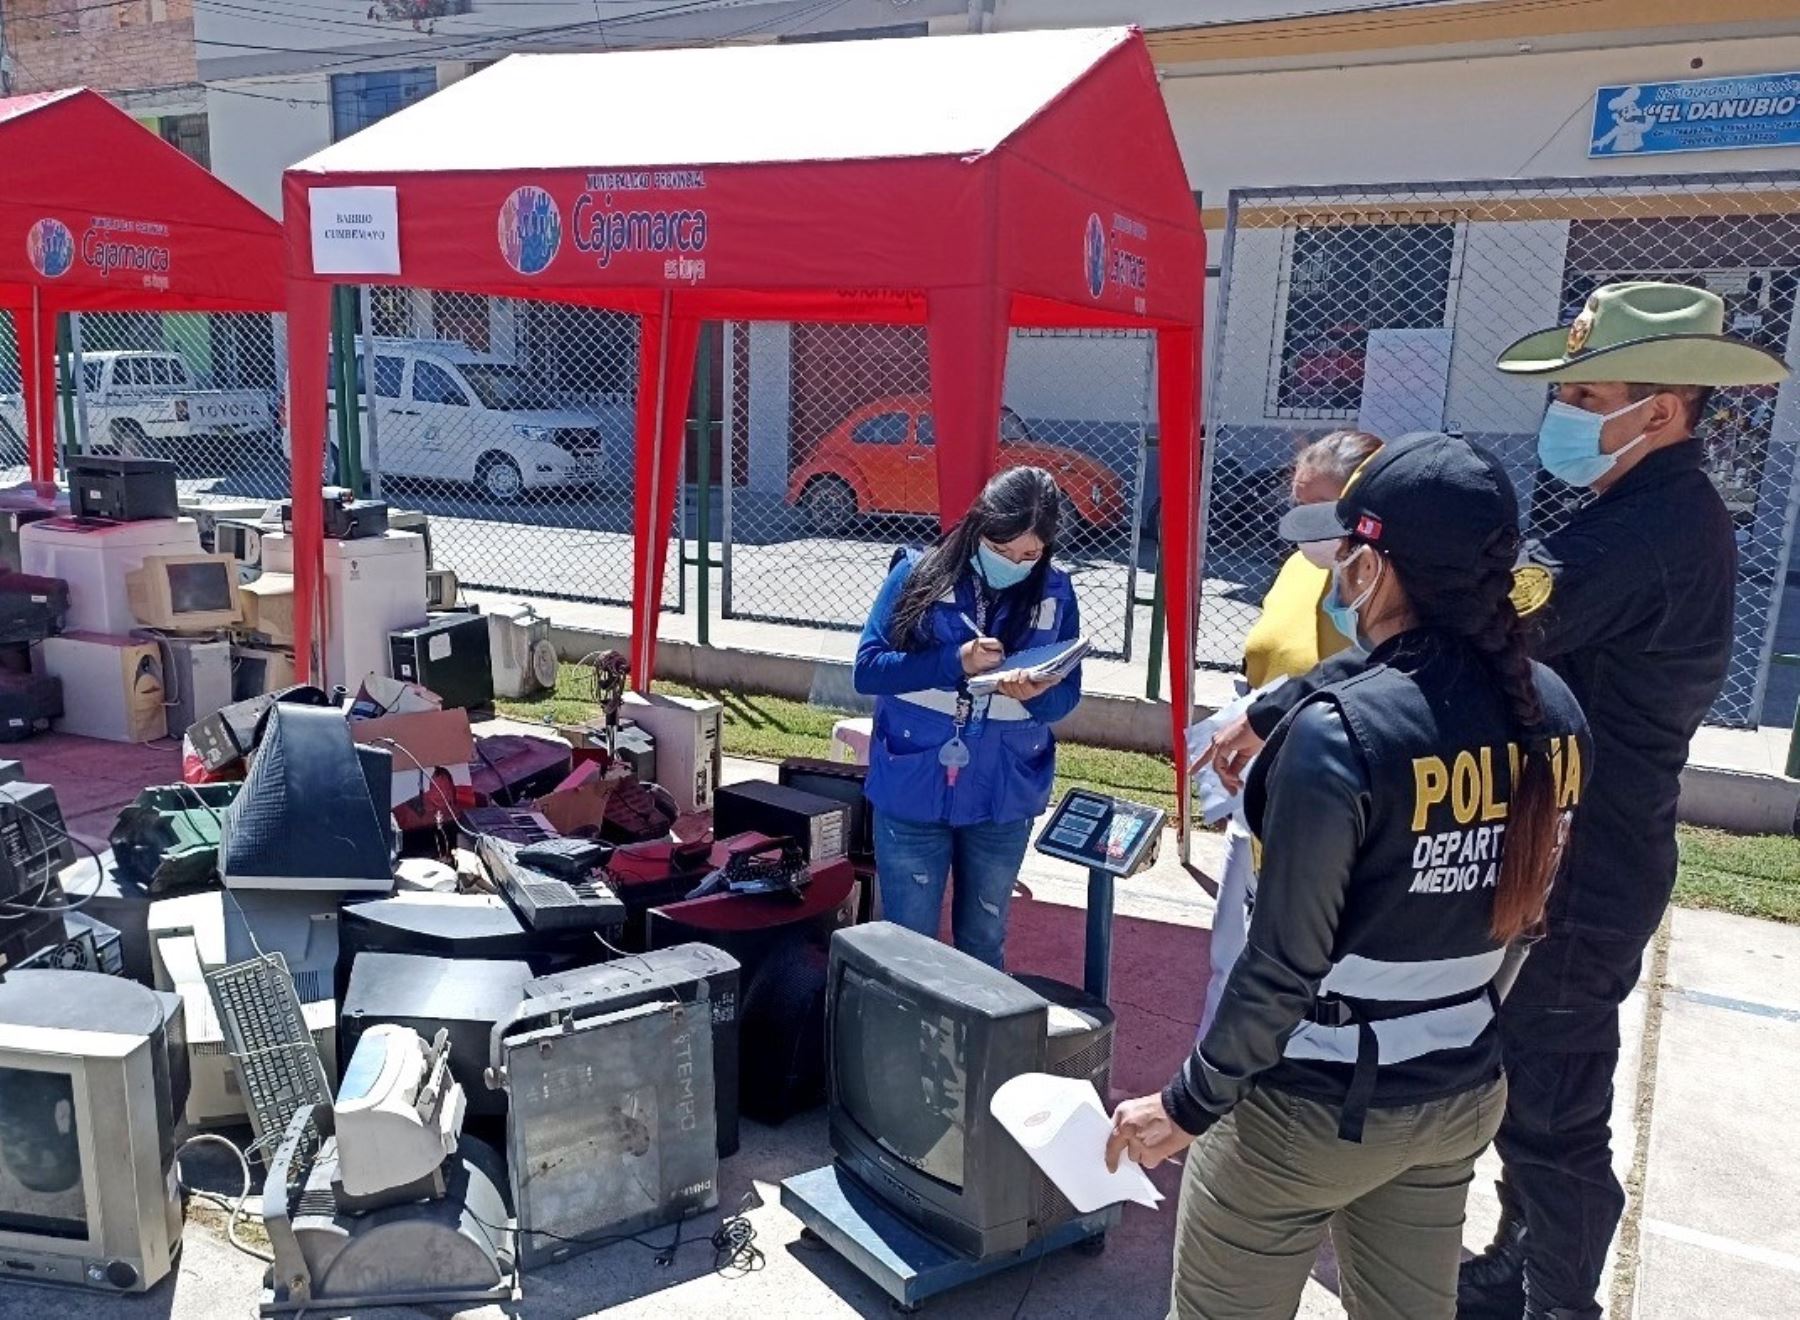 La Municipalidad Provincial de Cajamarca inició una campaña de reciclaje de aparatos electrónicos y eléctricos. La actividad tiene como objetivo cuidar el medio ambiente  y ayudar el tratamiento de pacientes con quemaduras. ANDINA/Difusión